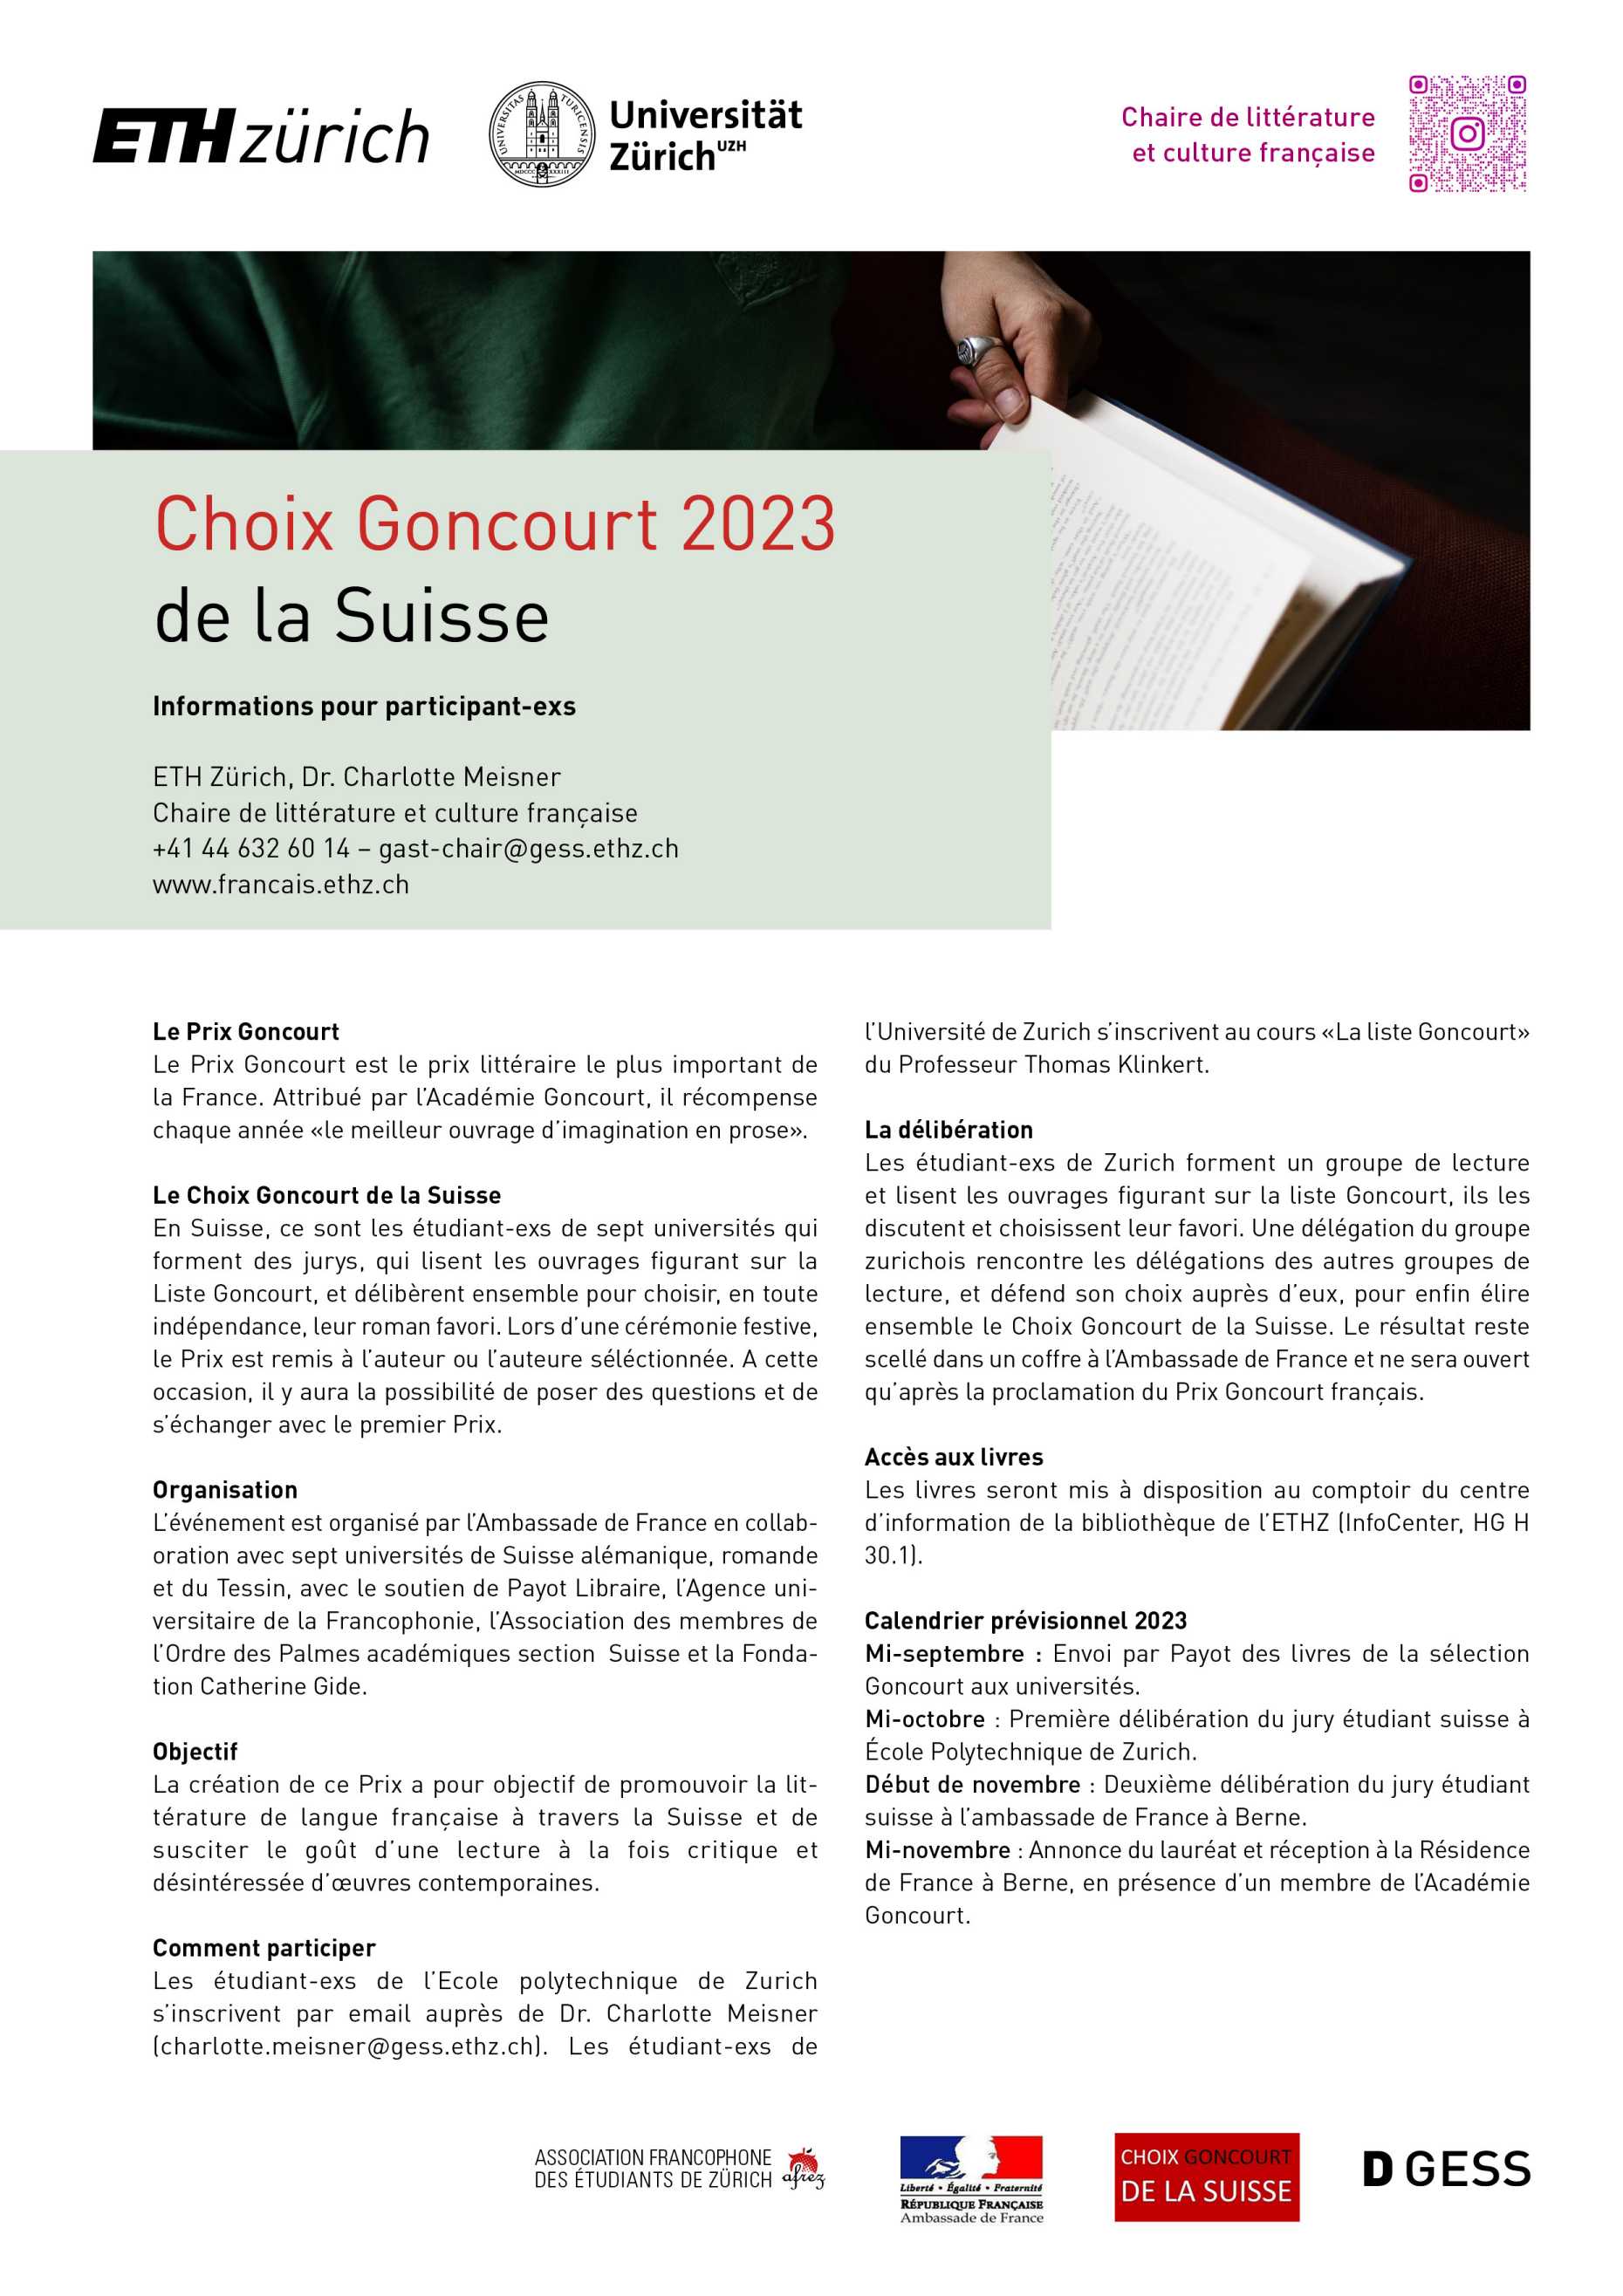 Choix Goncourt de la Suisse 2023